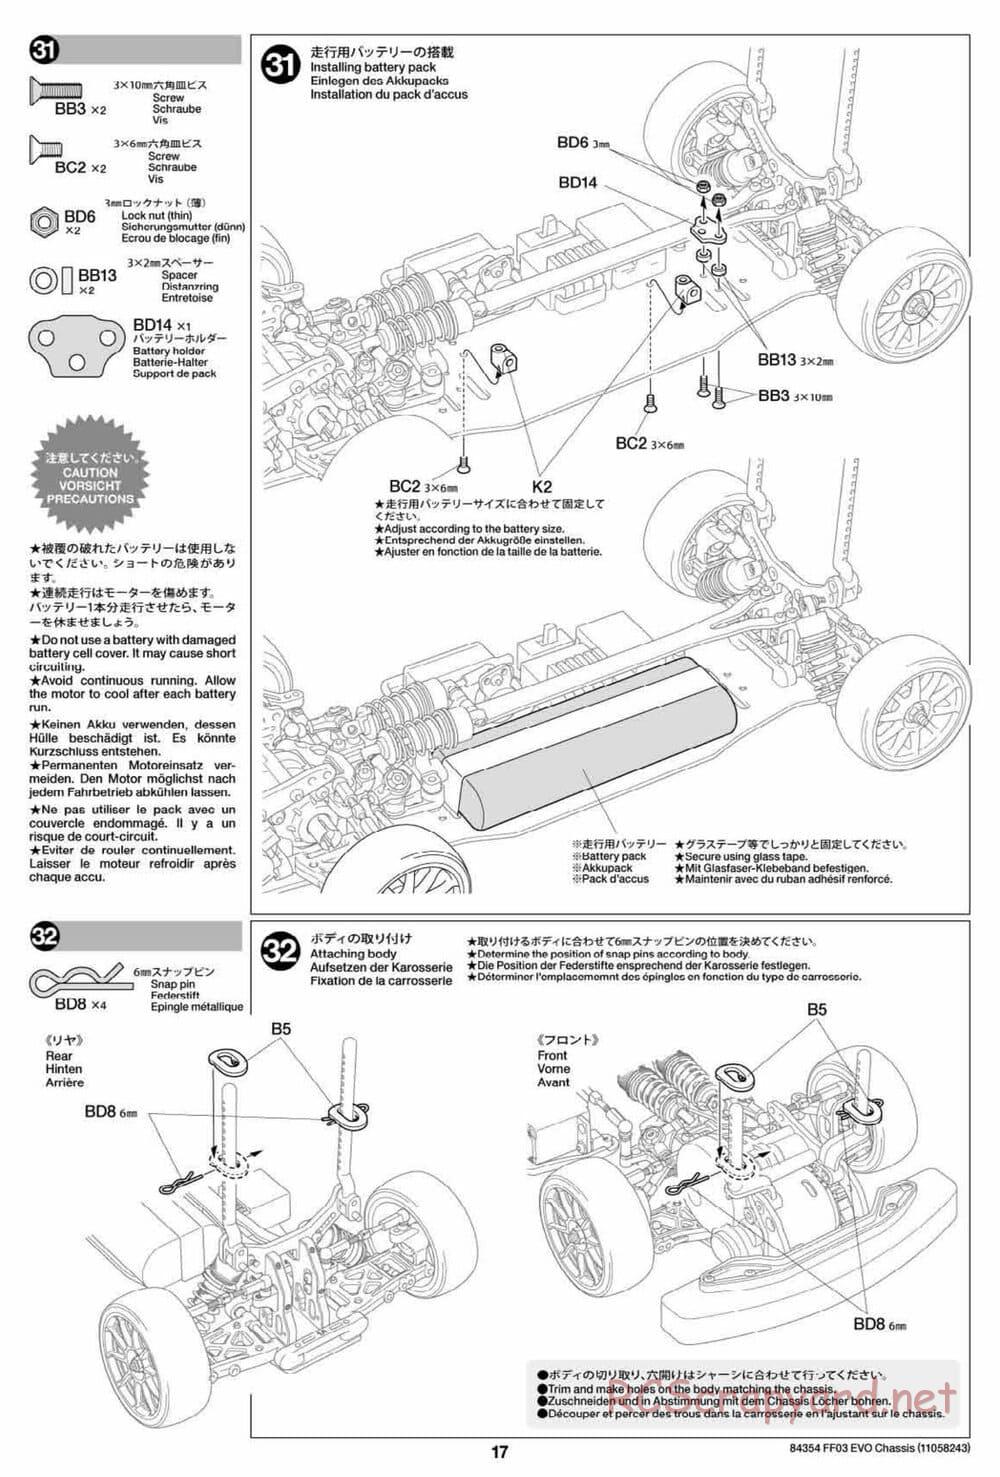 Tamiya - FF-03 Evo Chassis - Manual - Page 17